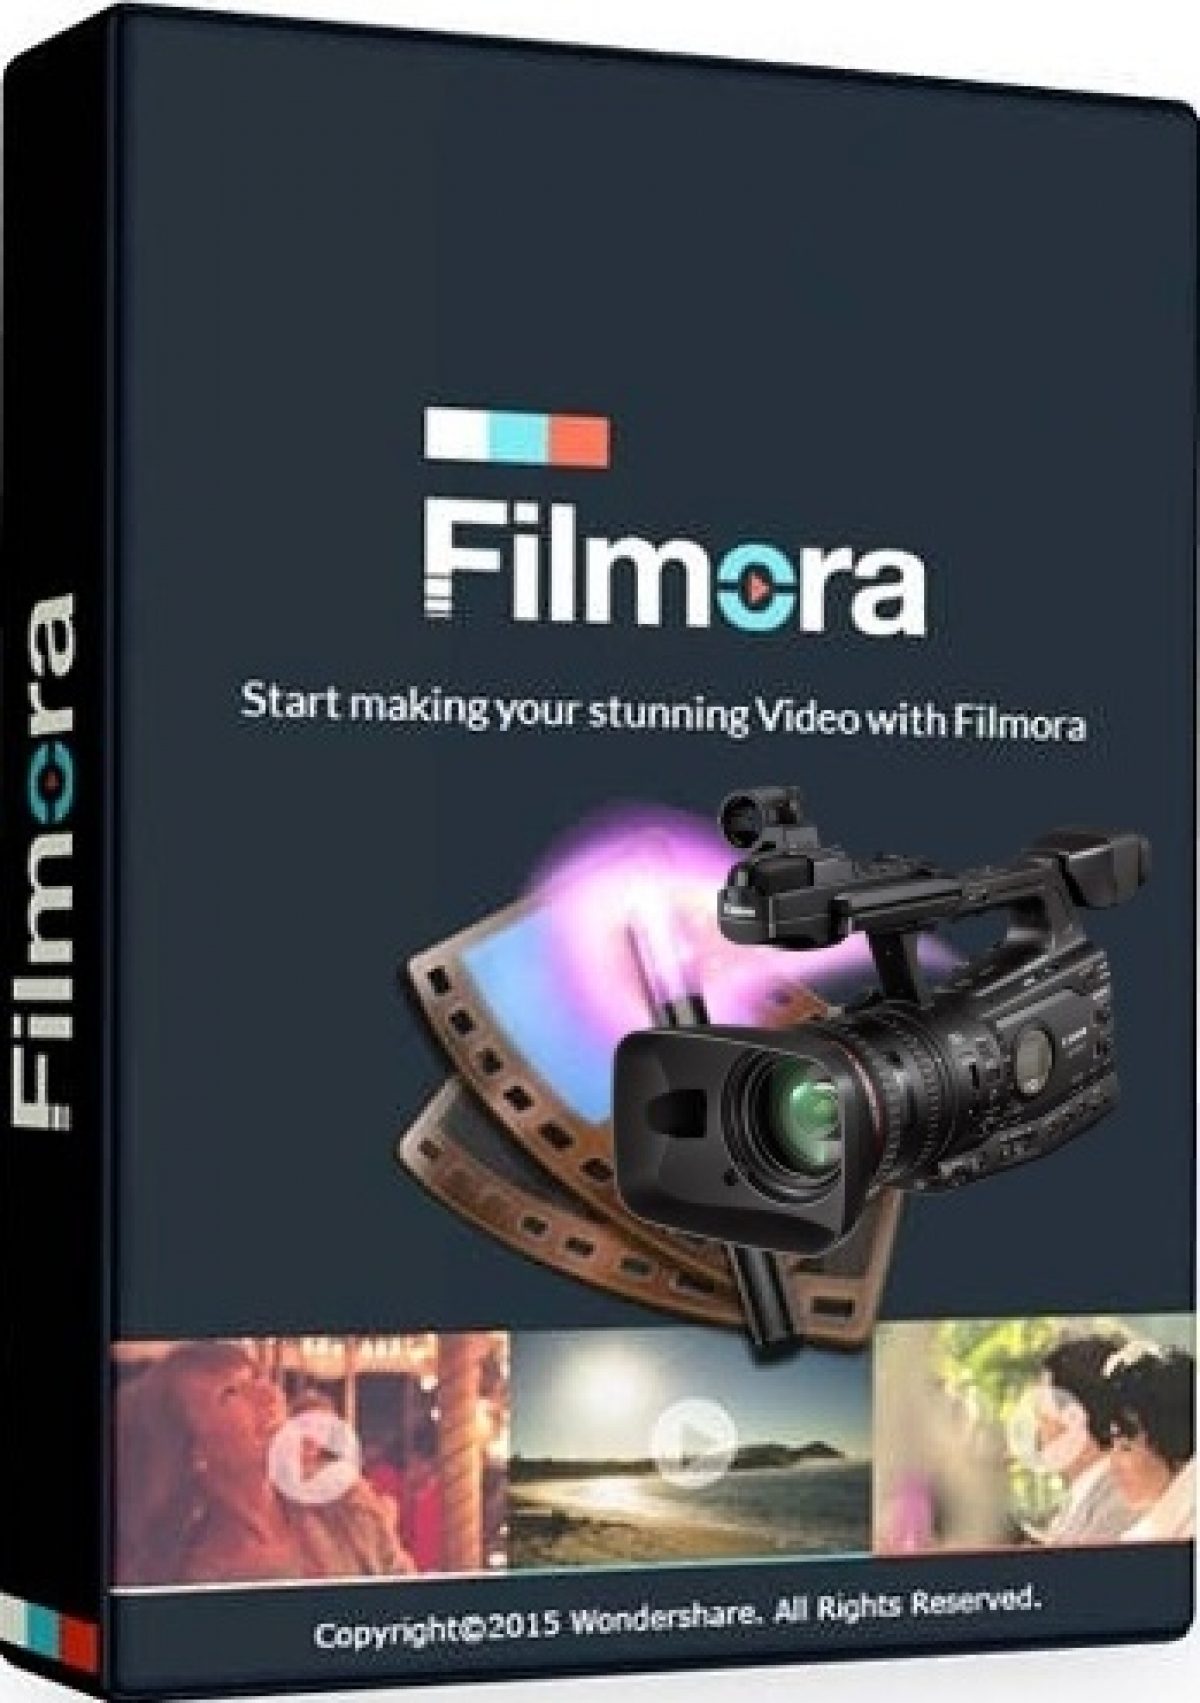 Download Wondershare Filmora 8 3 5 Full Crack For Mac